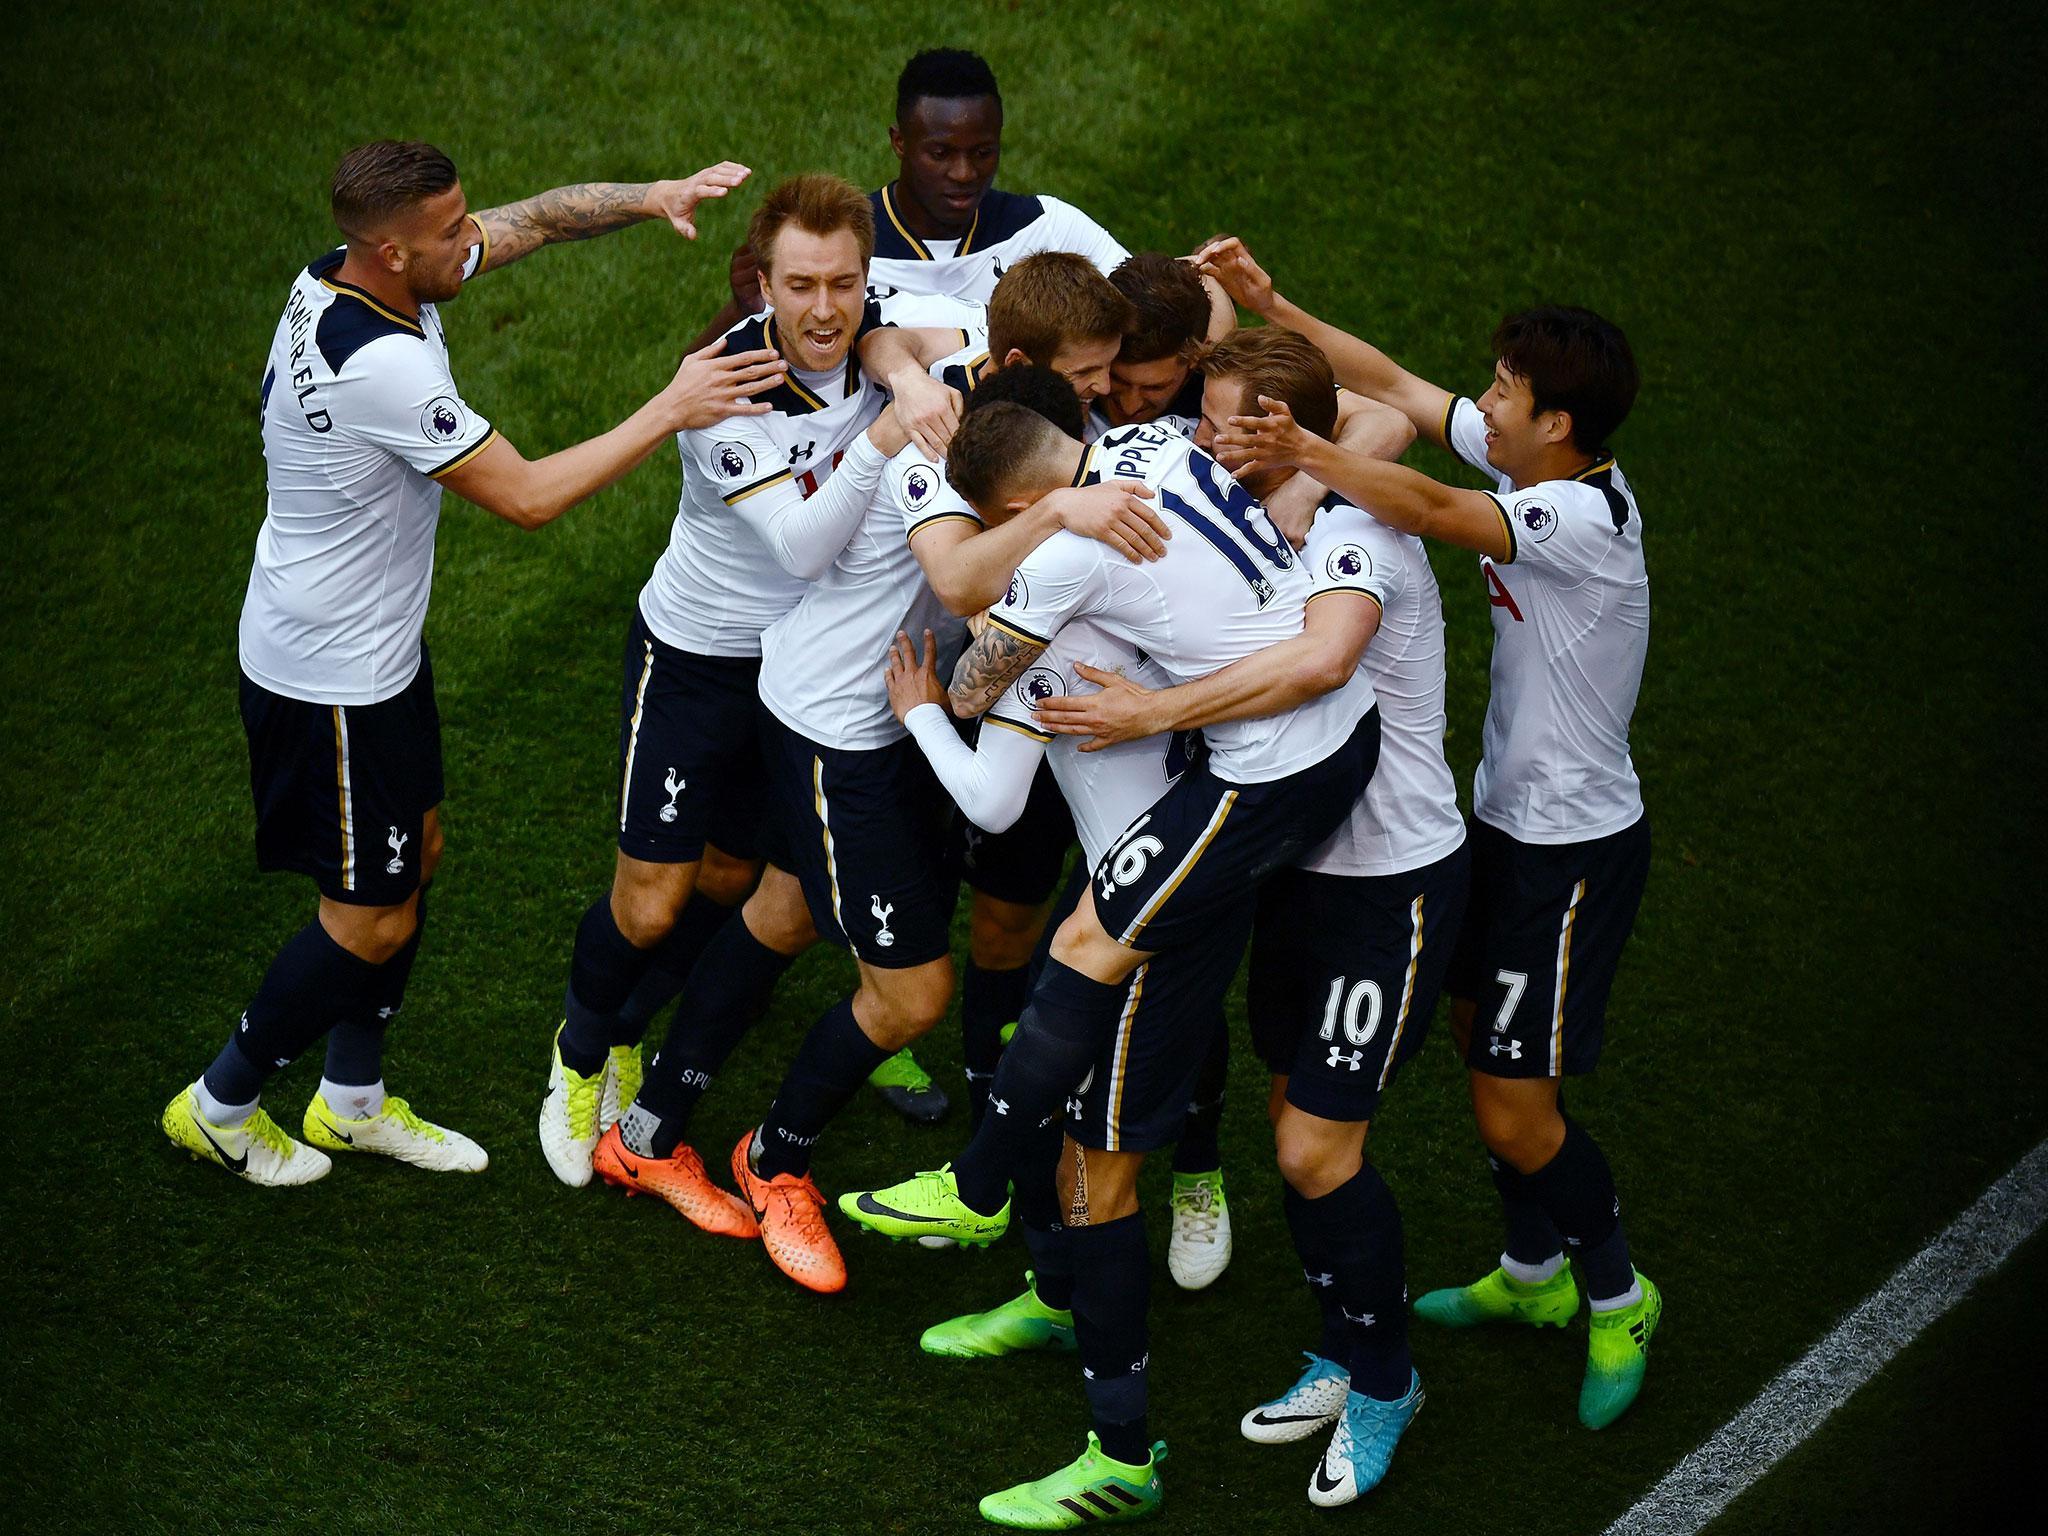 Tottenham will end their season in Hong Kong